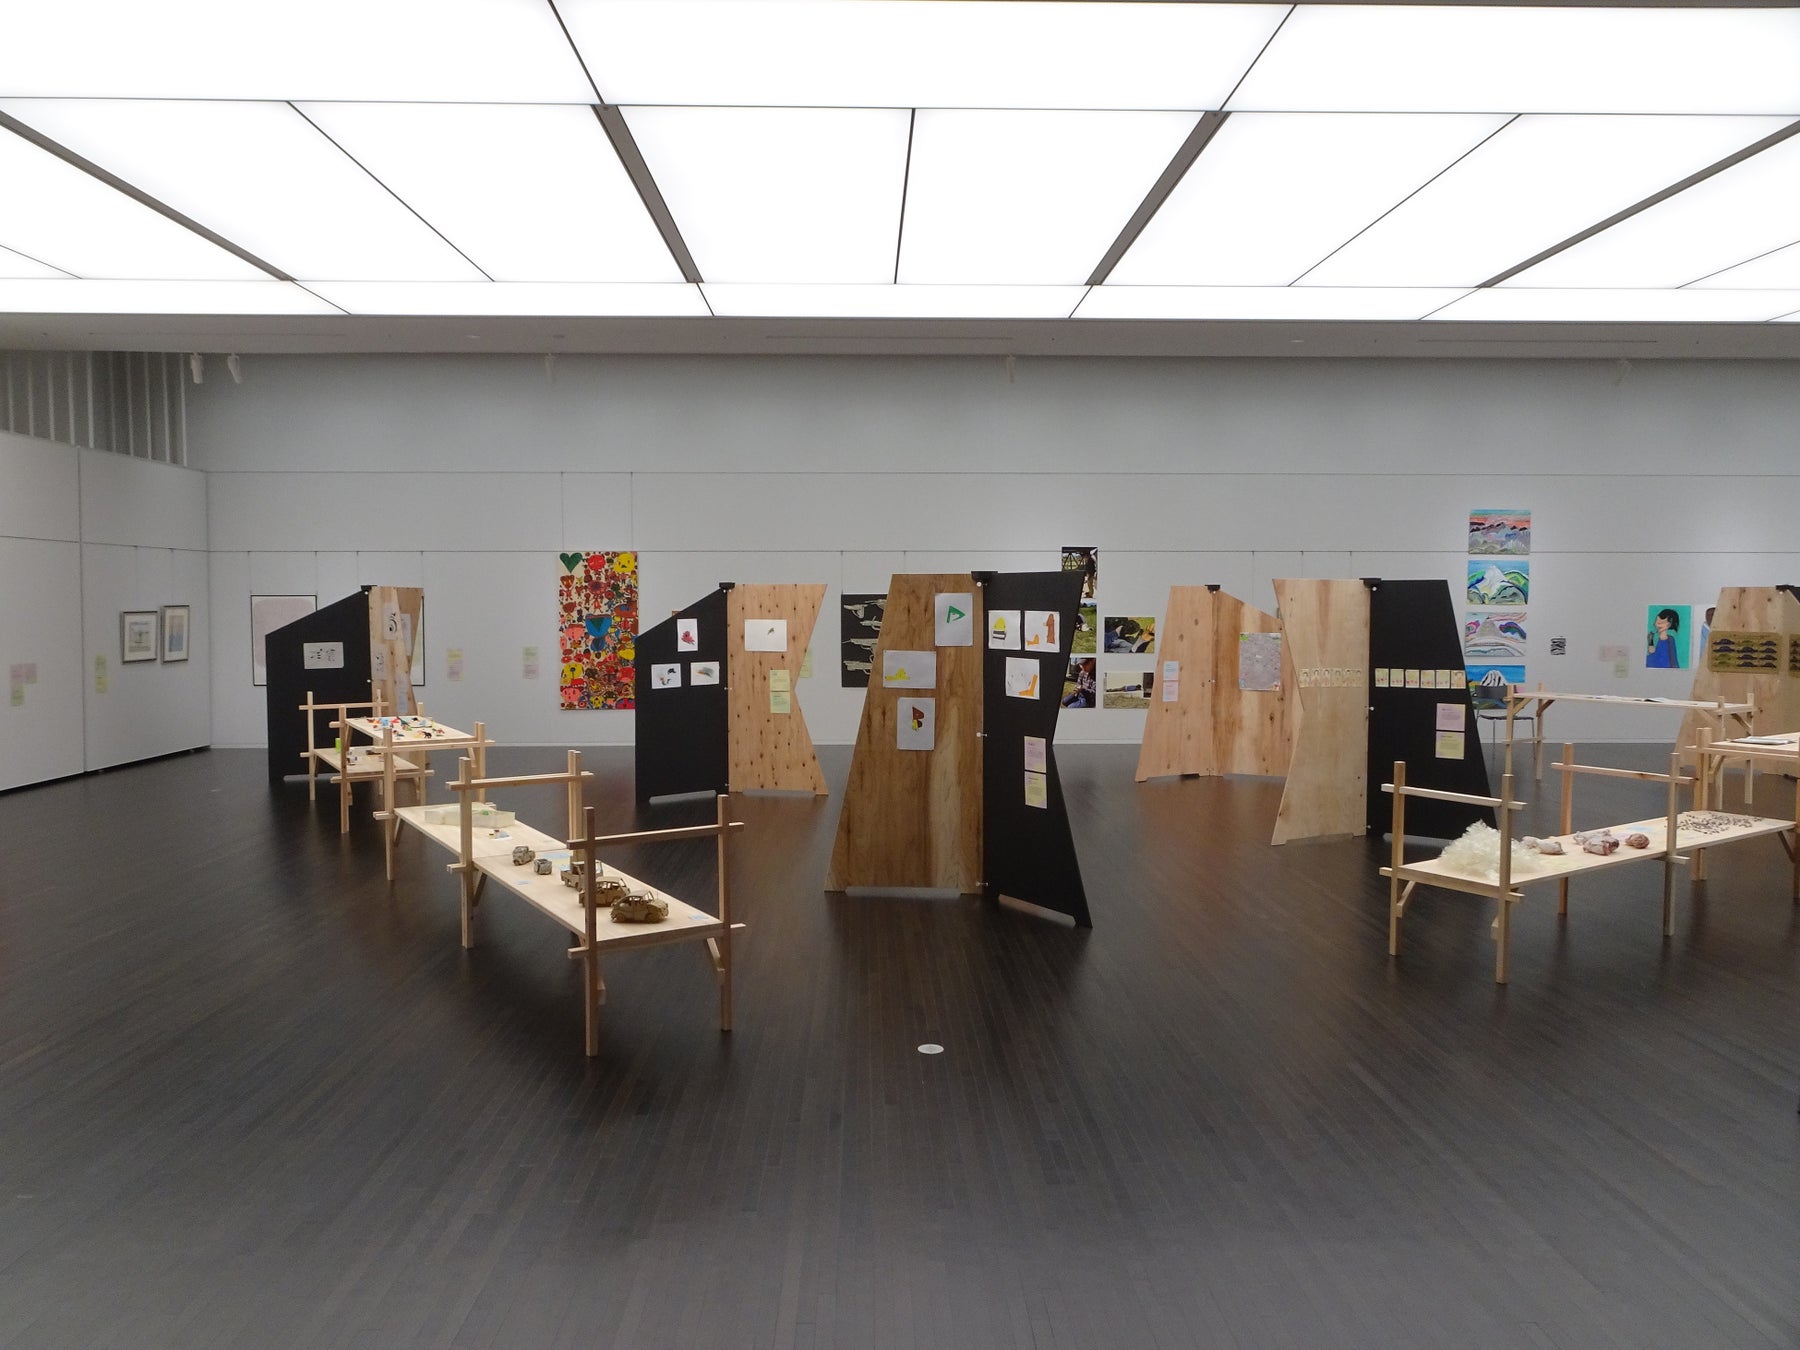 長野市の商業施設「ショッピングプラザアゲイン」 展覧会「Brillia Art Gallery in Nagano」開催のサブ画像3